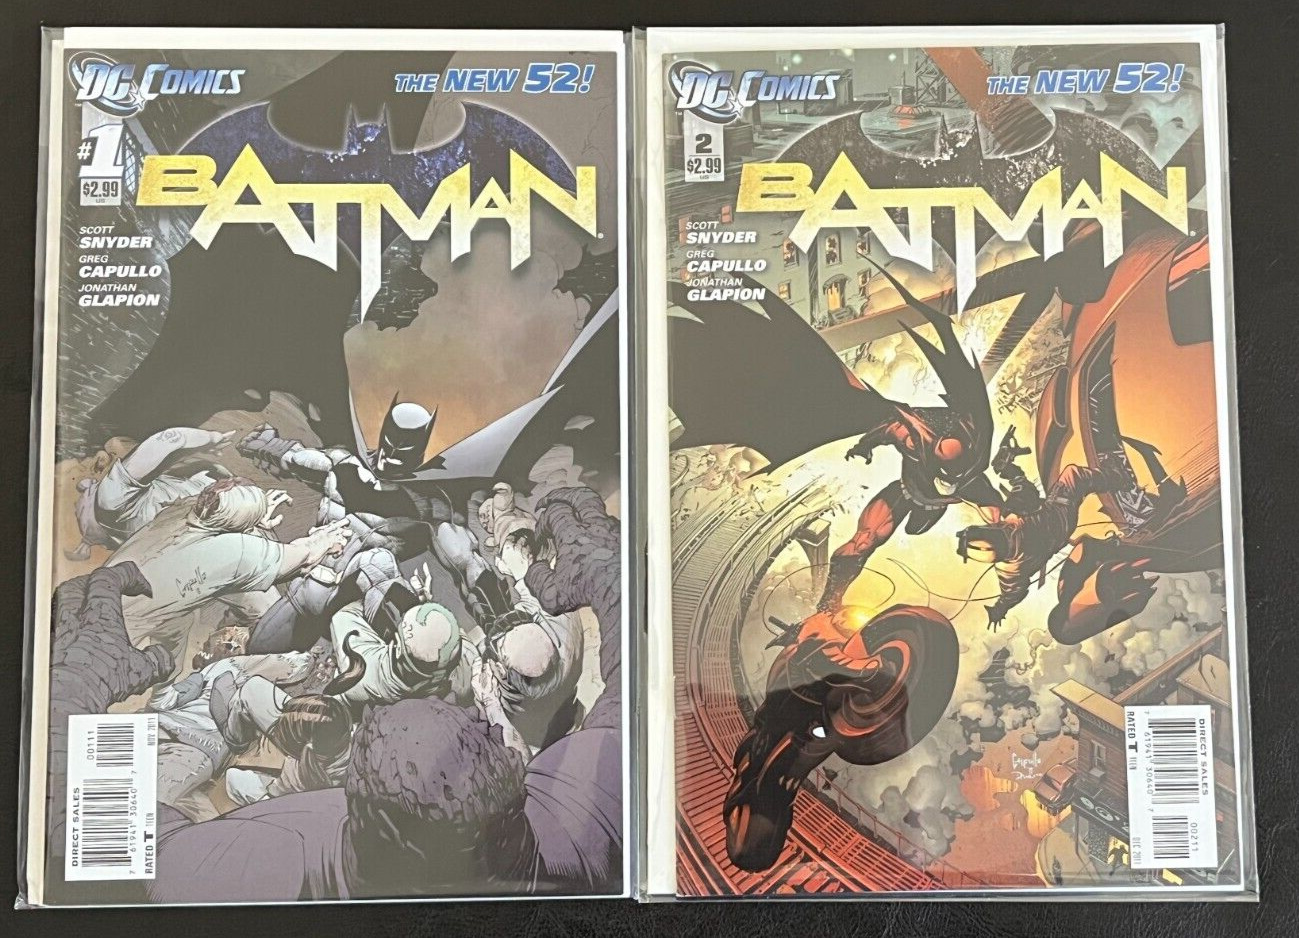 BATMAN #1 & #2 New 52 (DC Comics 2011) 1st App Lincoln March and Harper Row